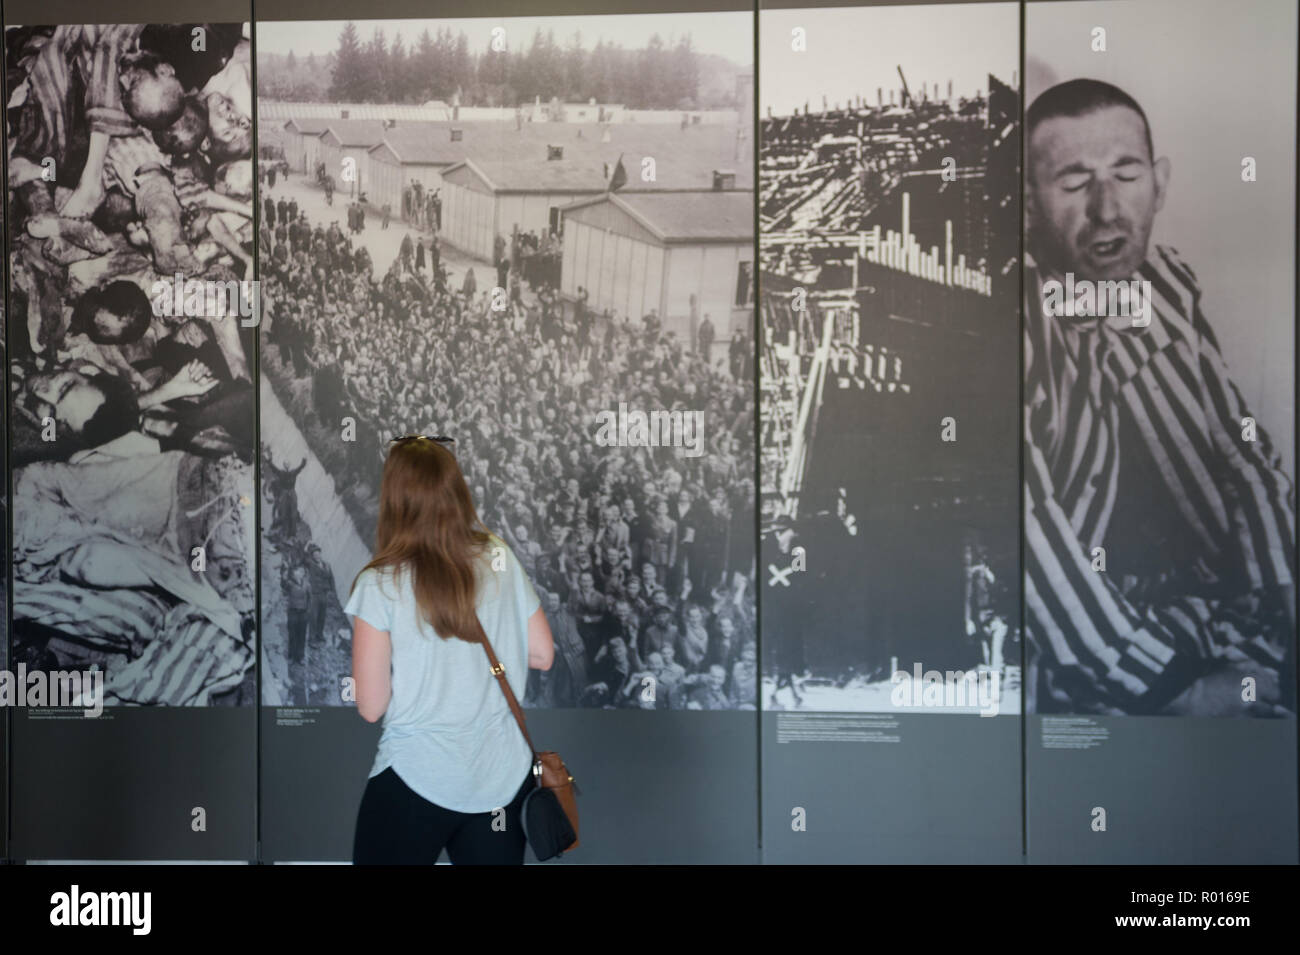 Dachau, Deutschland, Museum in der KZ-Gedenkstätte Dachau Stockfoto